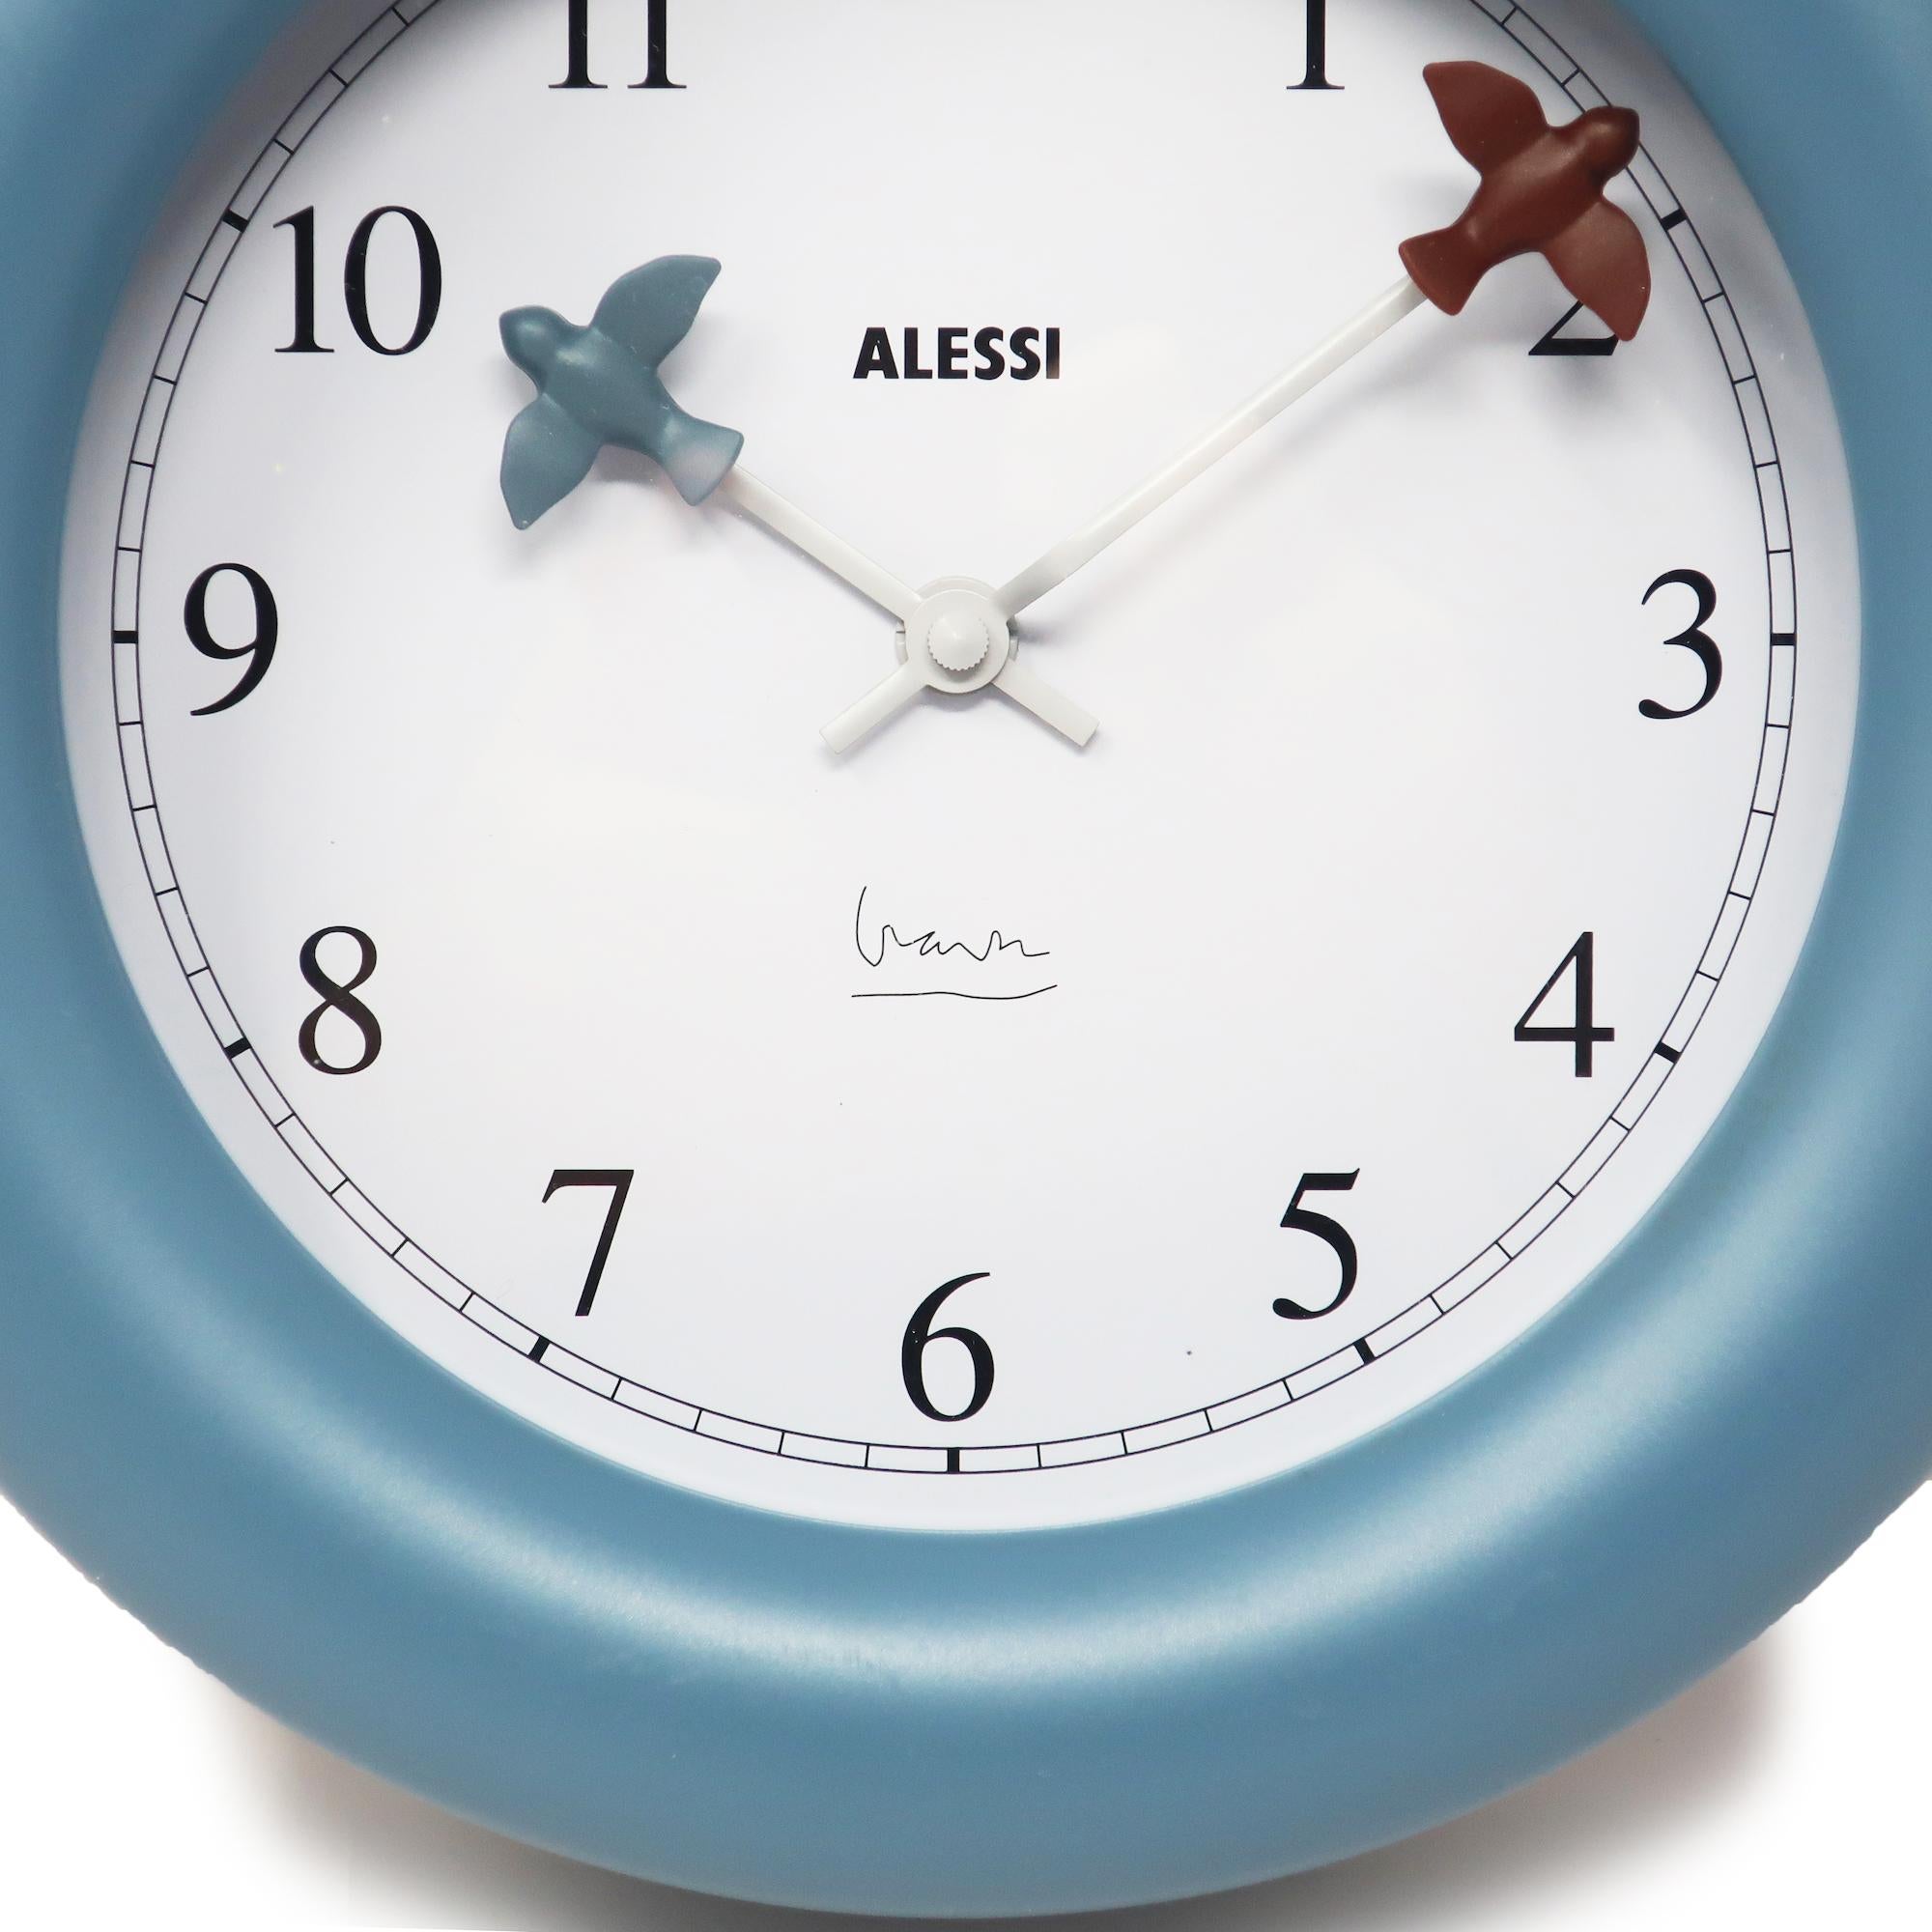 alessi kitchen clock